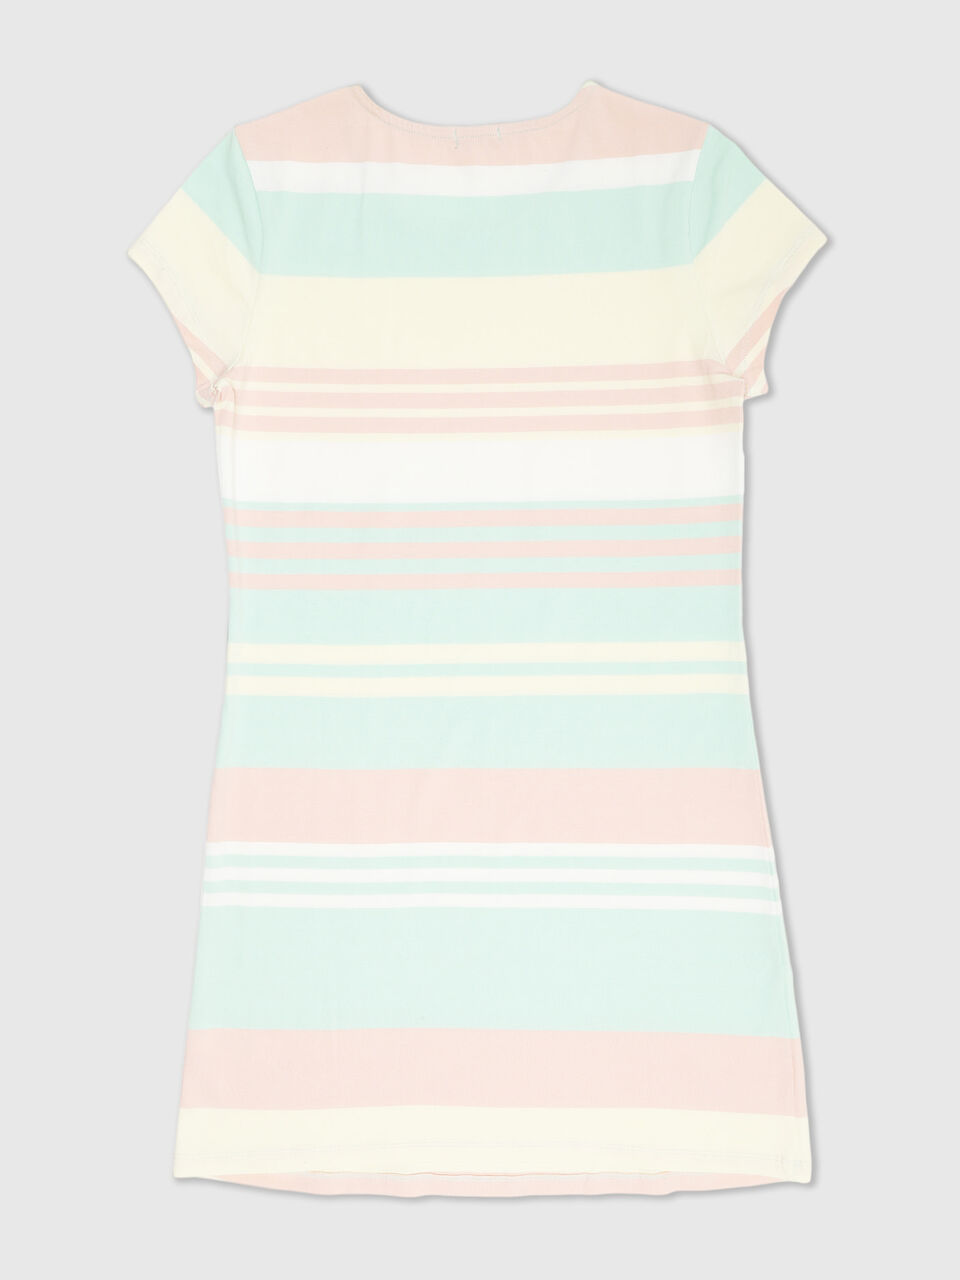 Stripe Rib Polo T Shirt Dress